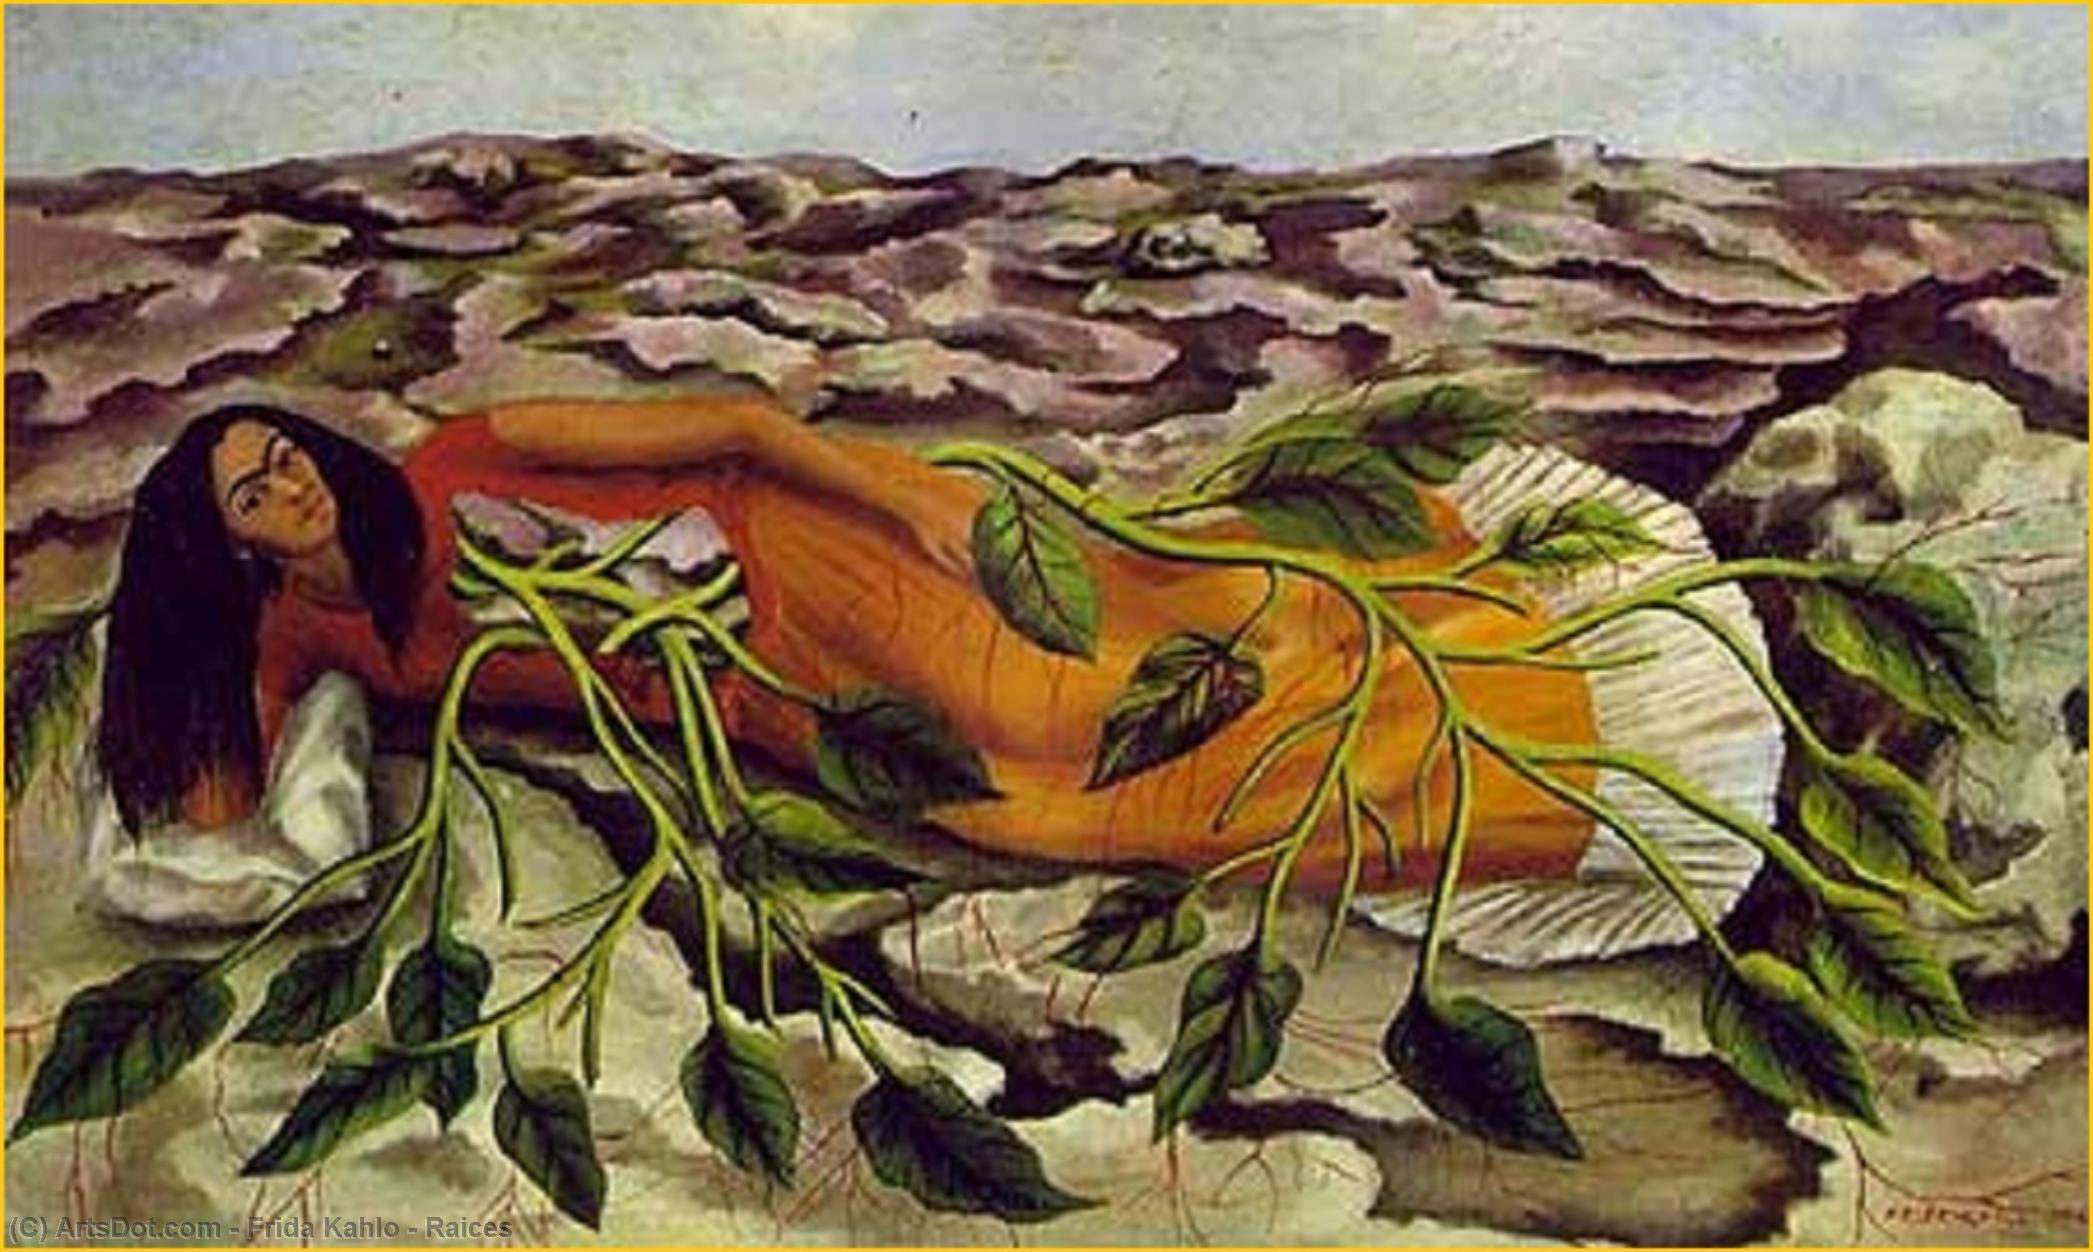 WikiOO.org - Encyclopedia of Fine Arts - Målning, konstverk Frida Kahlo - Raices